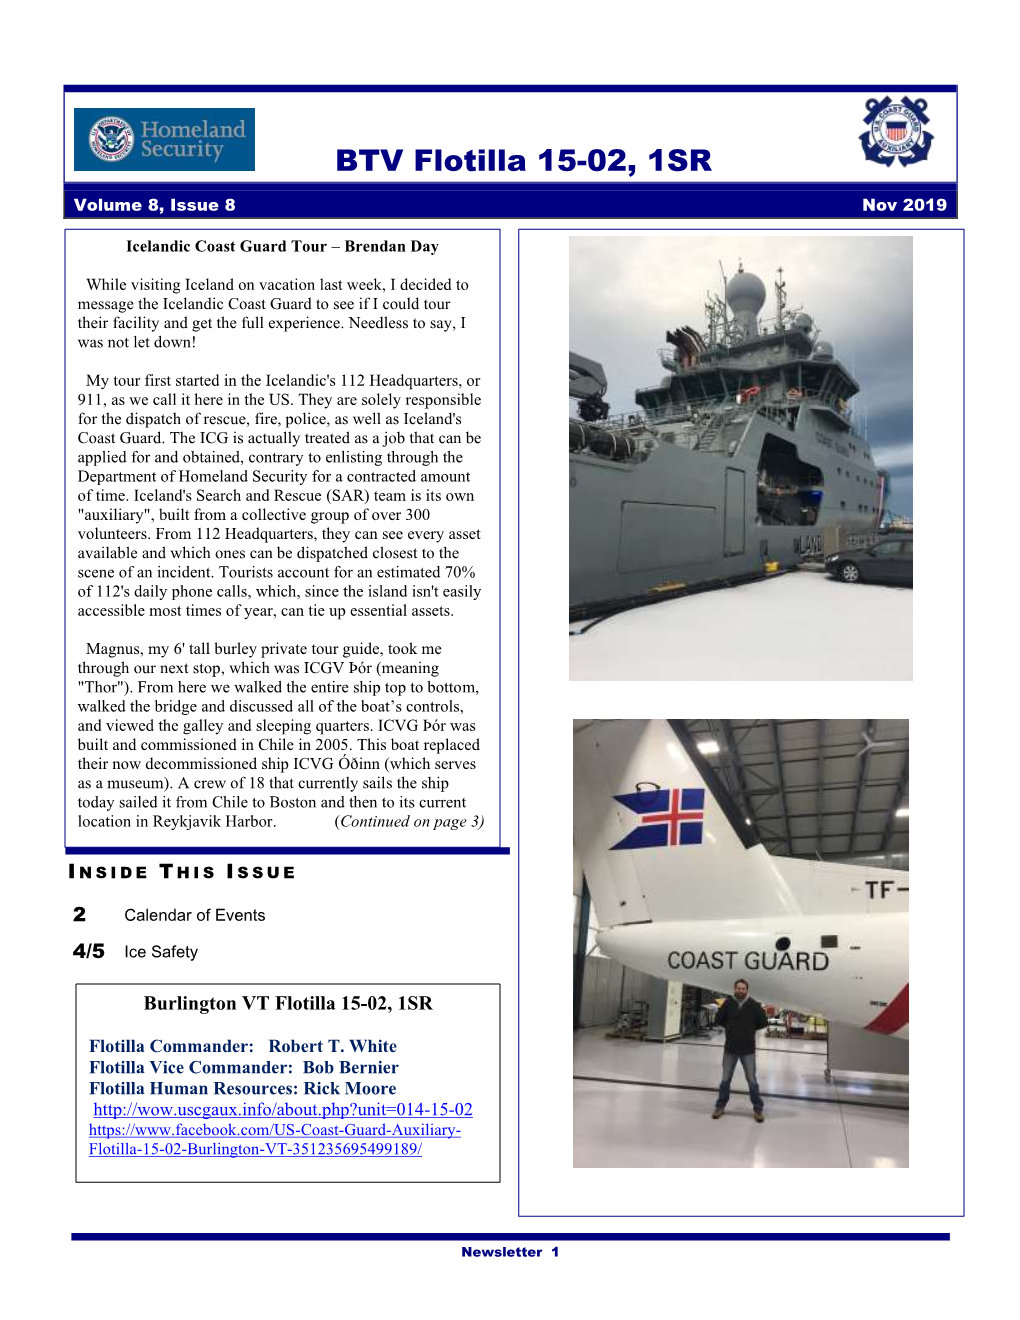 BTV Flotilla 15-02, 1SR Volume 8, Issue 8 Nov 2019